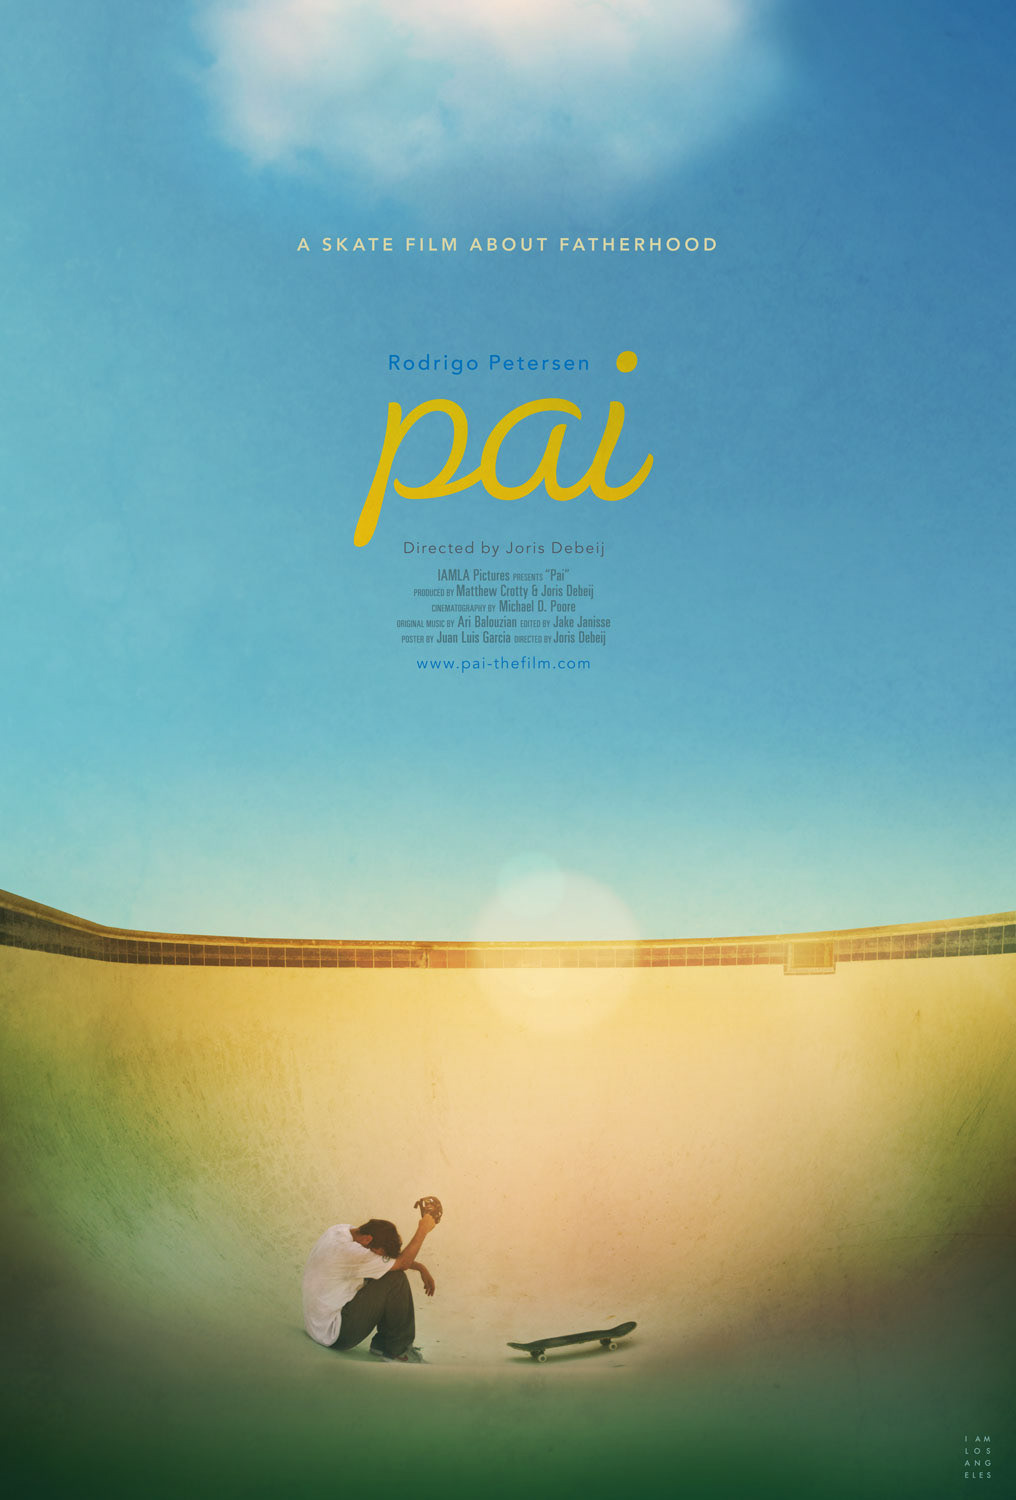 Documentary  movie poster skateboarding film poster one sheet key art poster skate film 